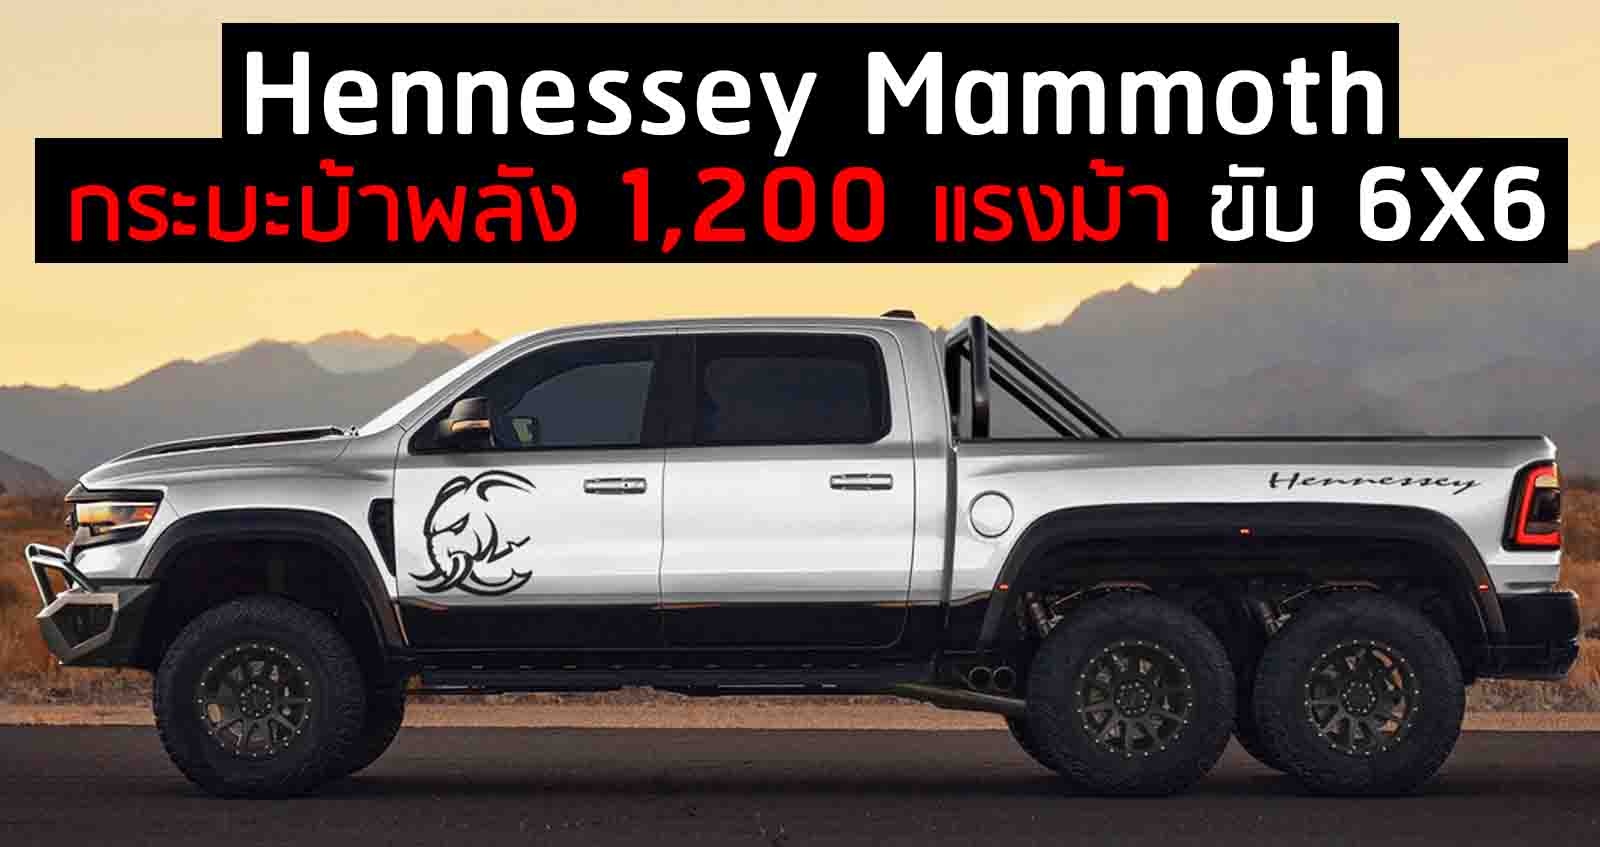 Hennessey Mammoth กระบะบ้าพลัง 1,200 แรงม้า ขับ 6 ล้อ ราคาถึง 15 ล้านบาท